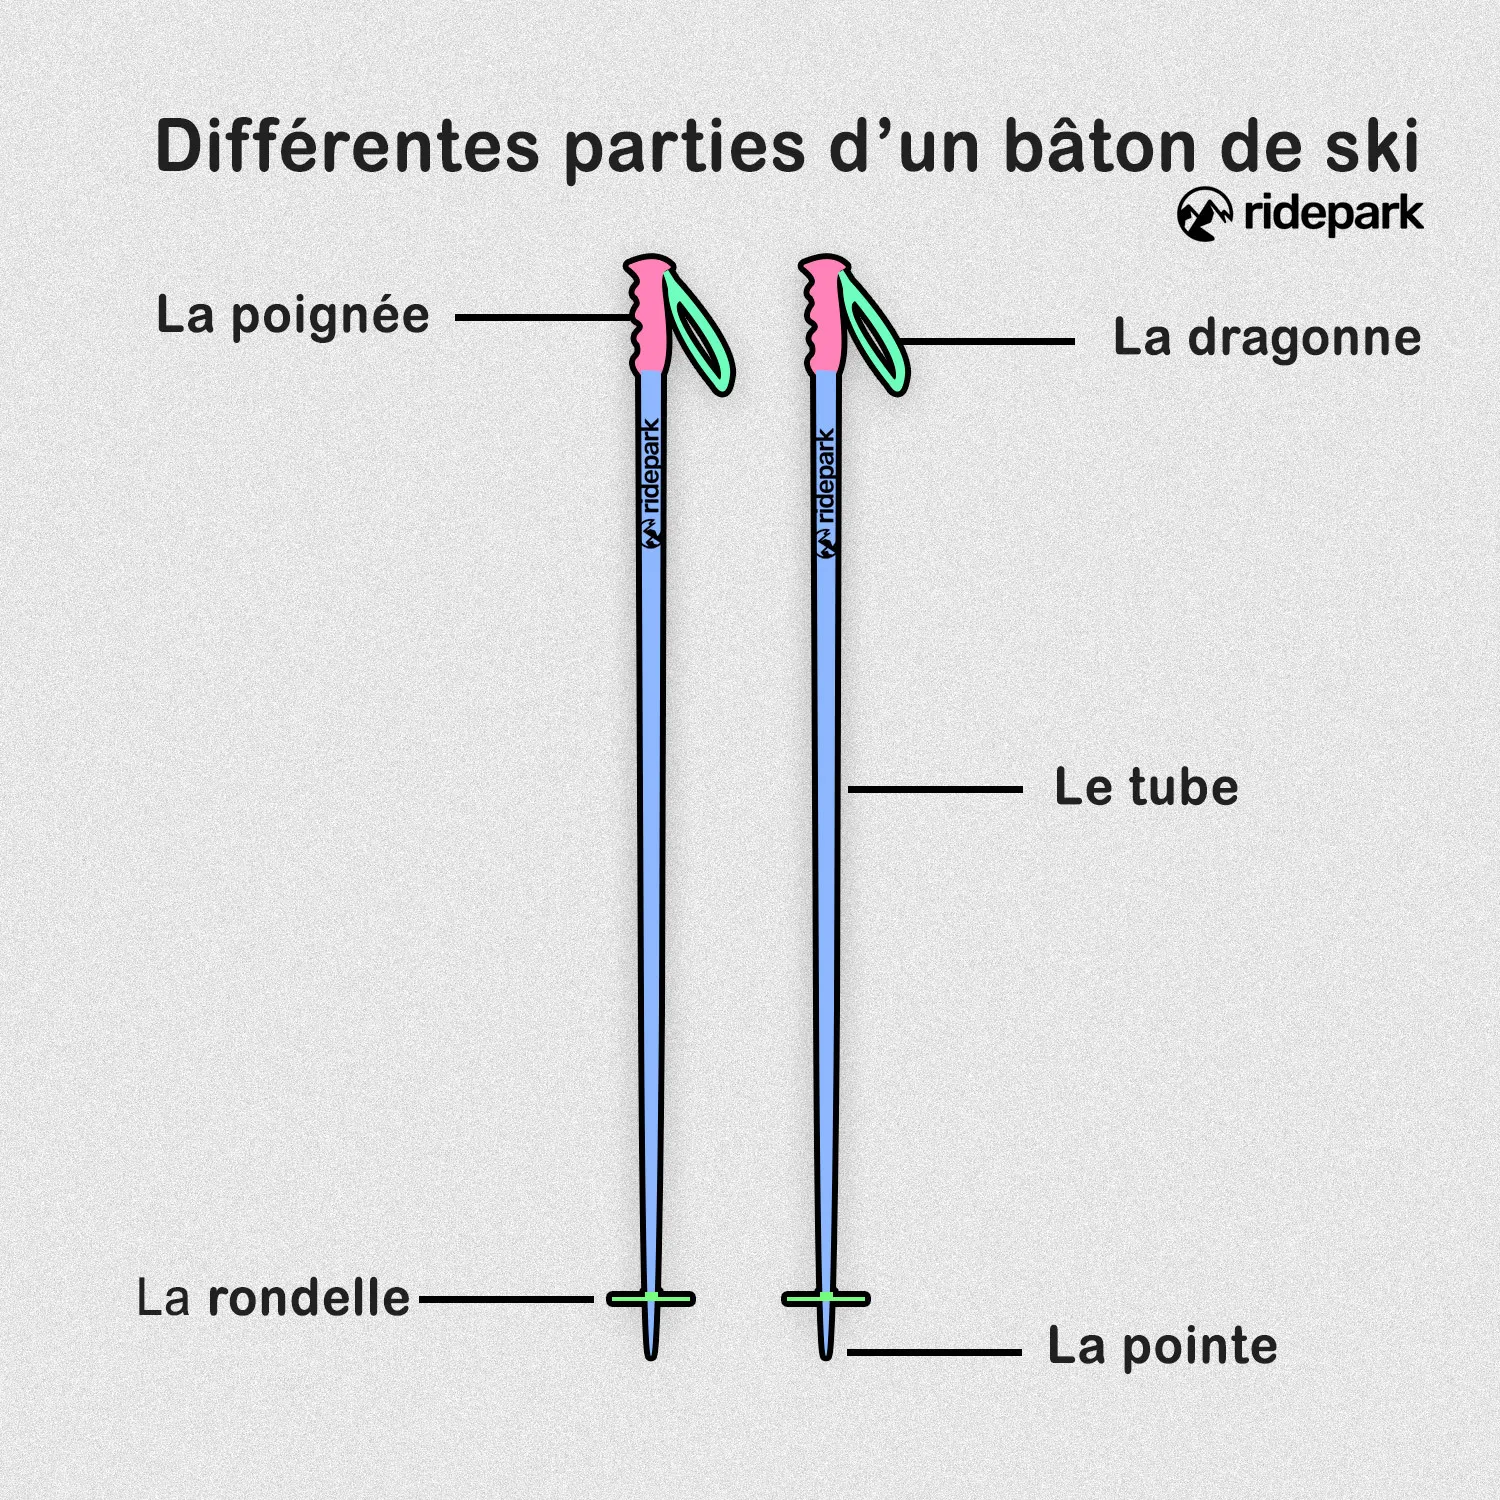 Les différentes parties d’un bâton de ski